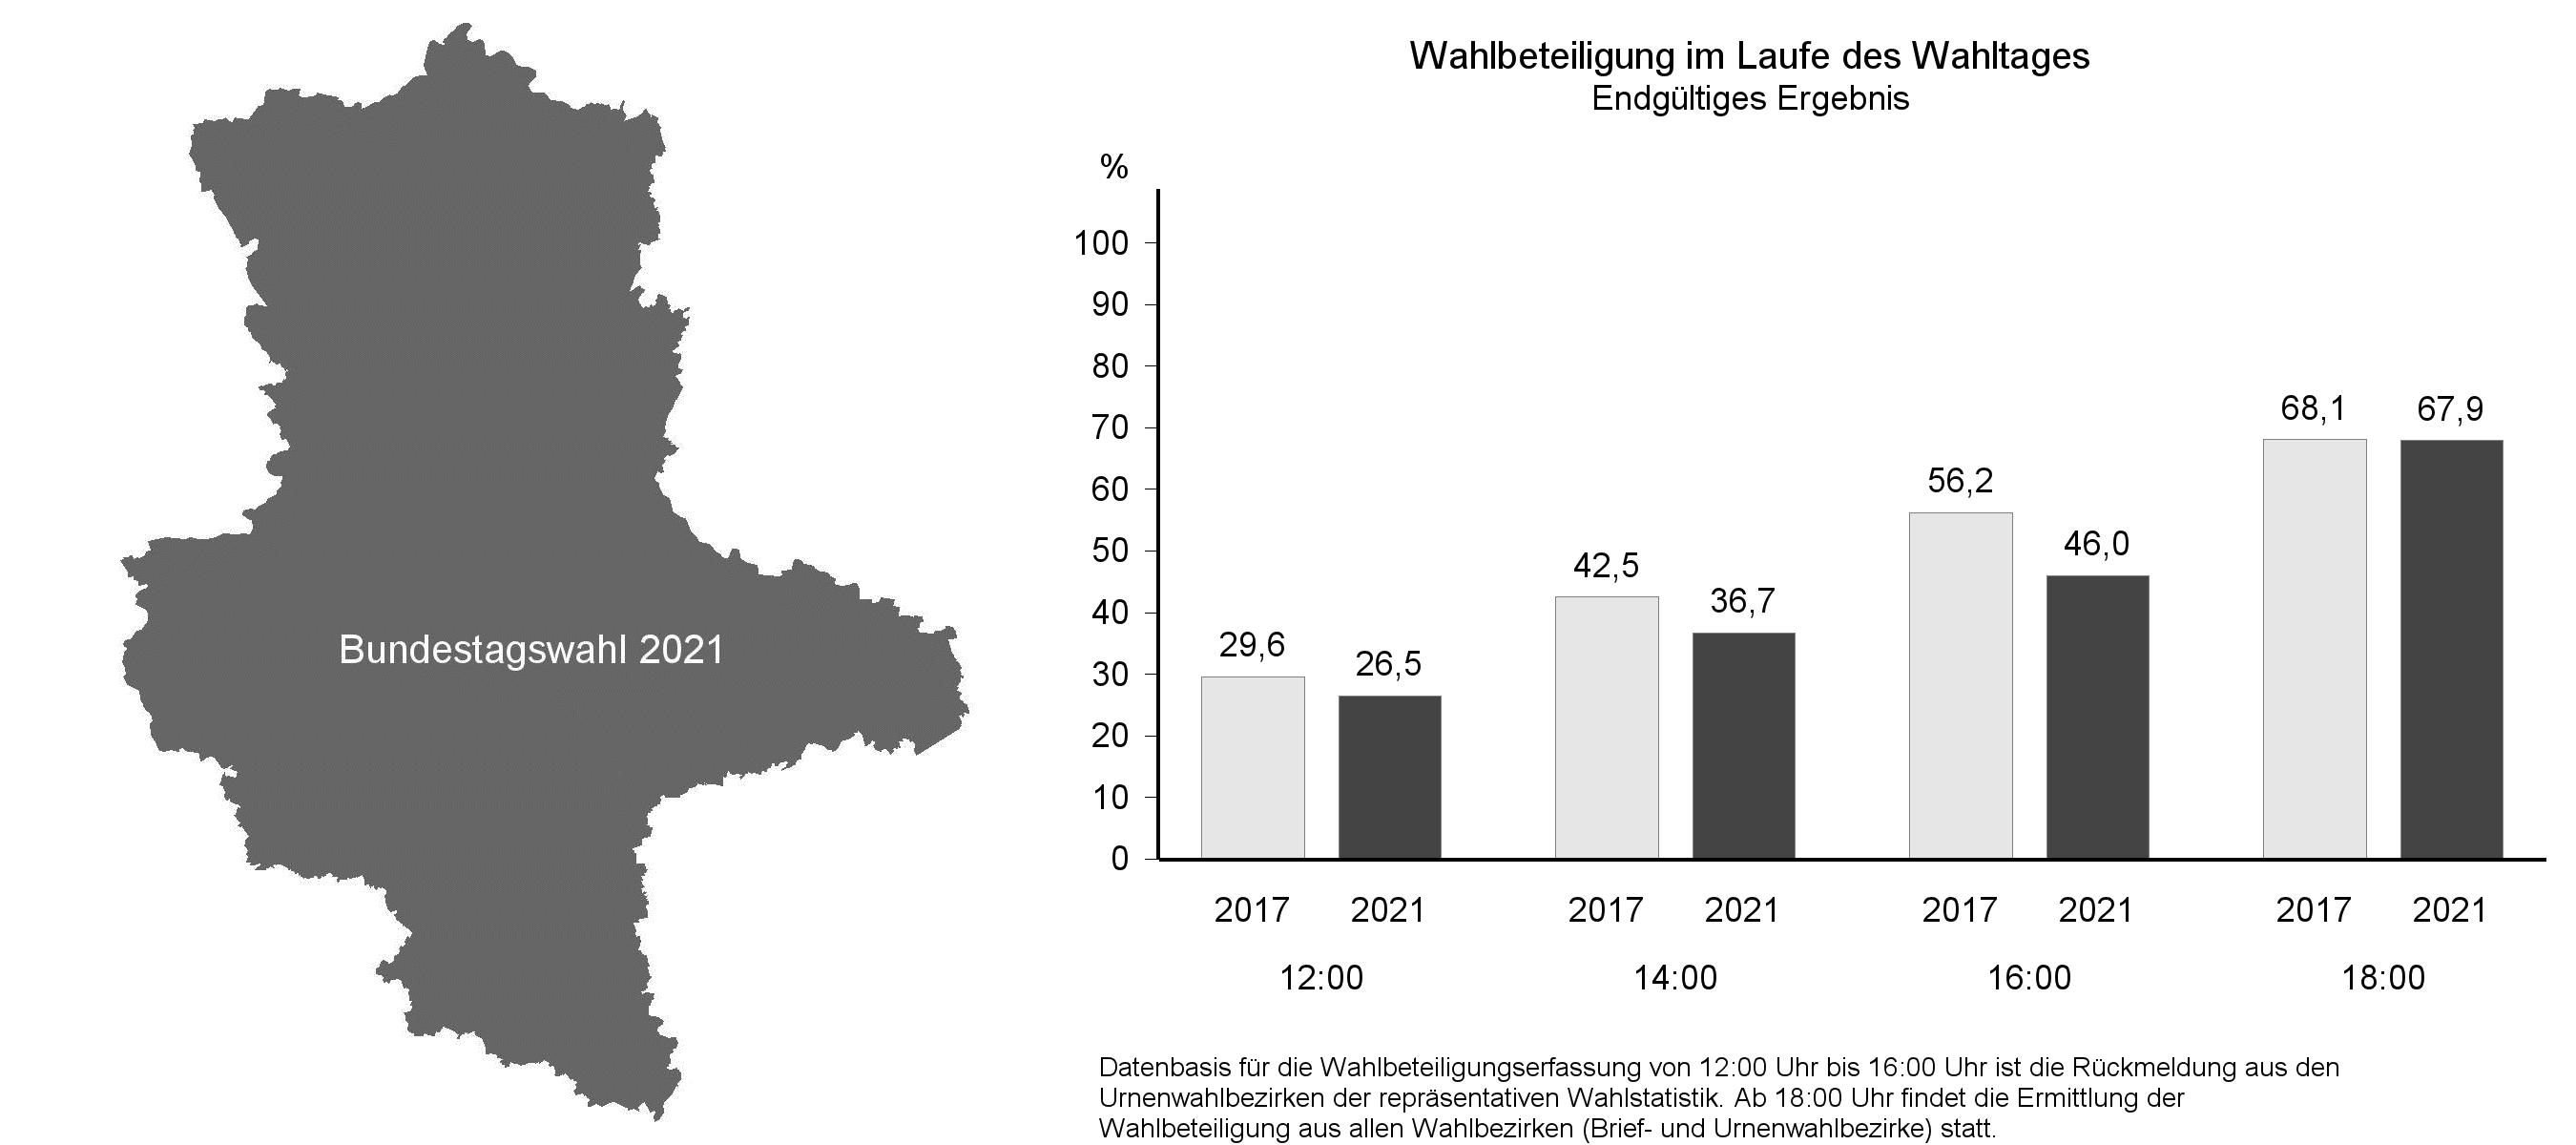 Bundestagswahl 2021 - Ergebnisse in Sachsen-Anhalt